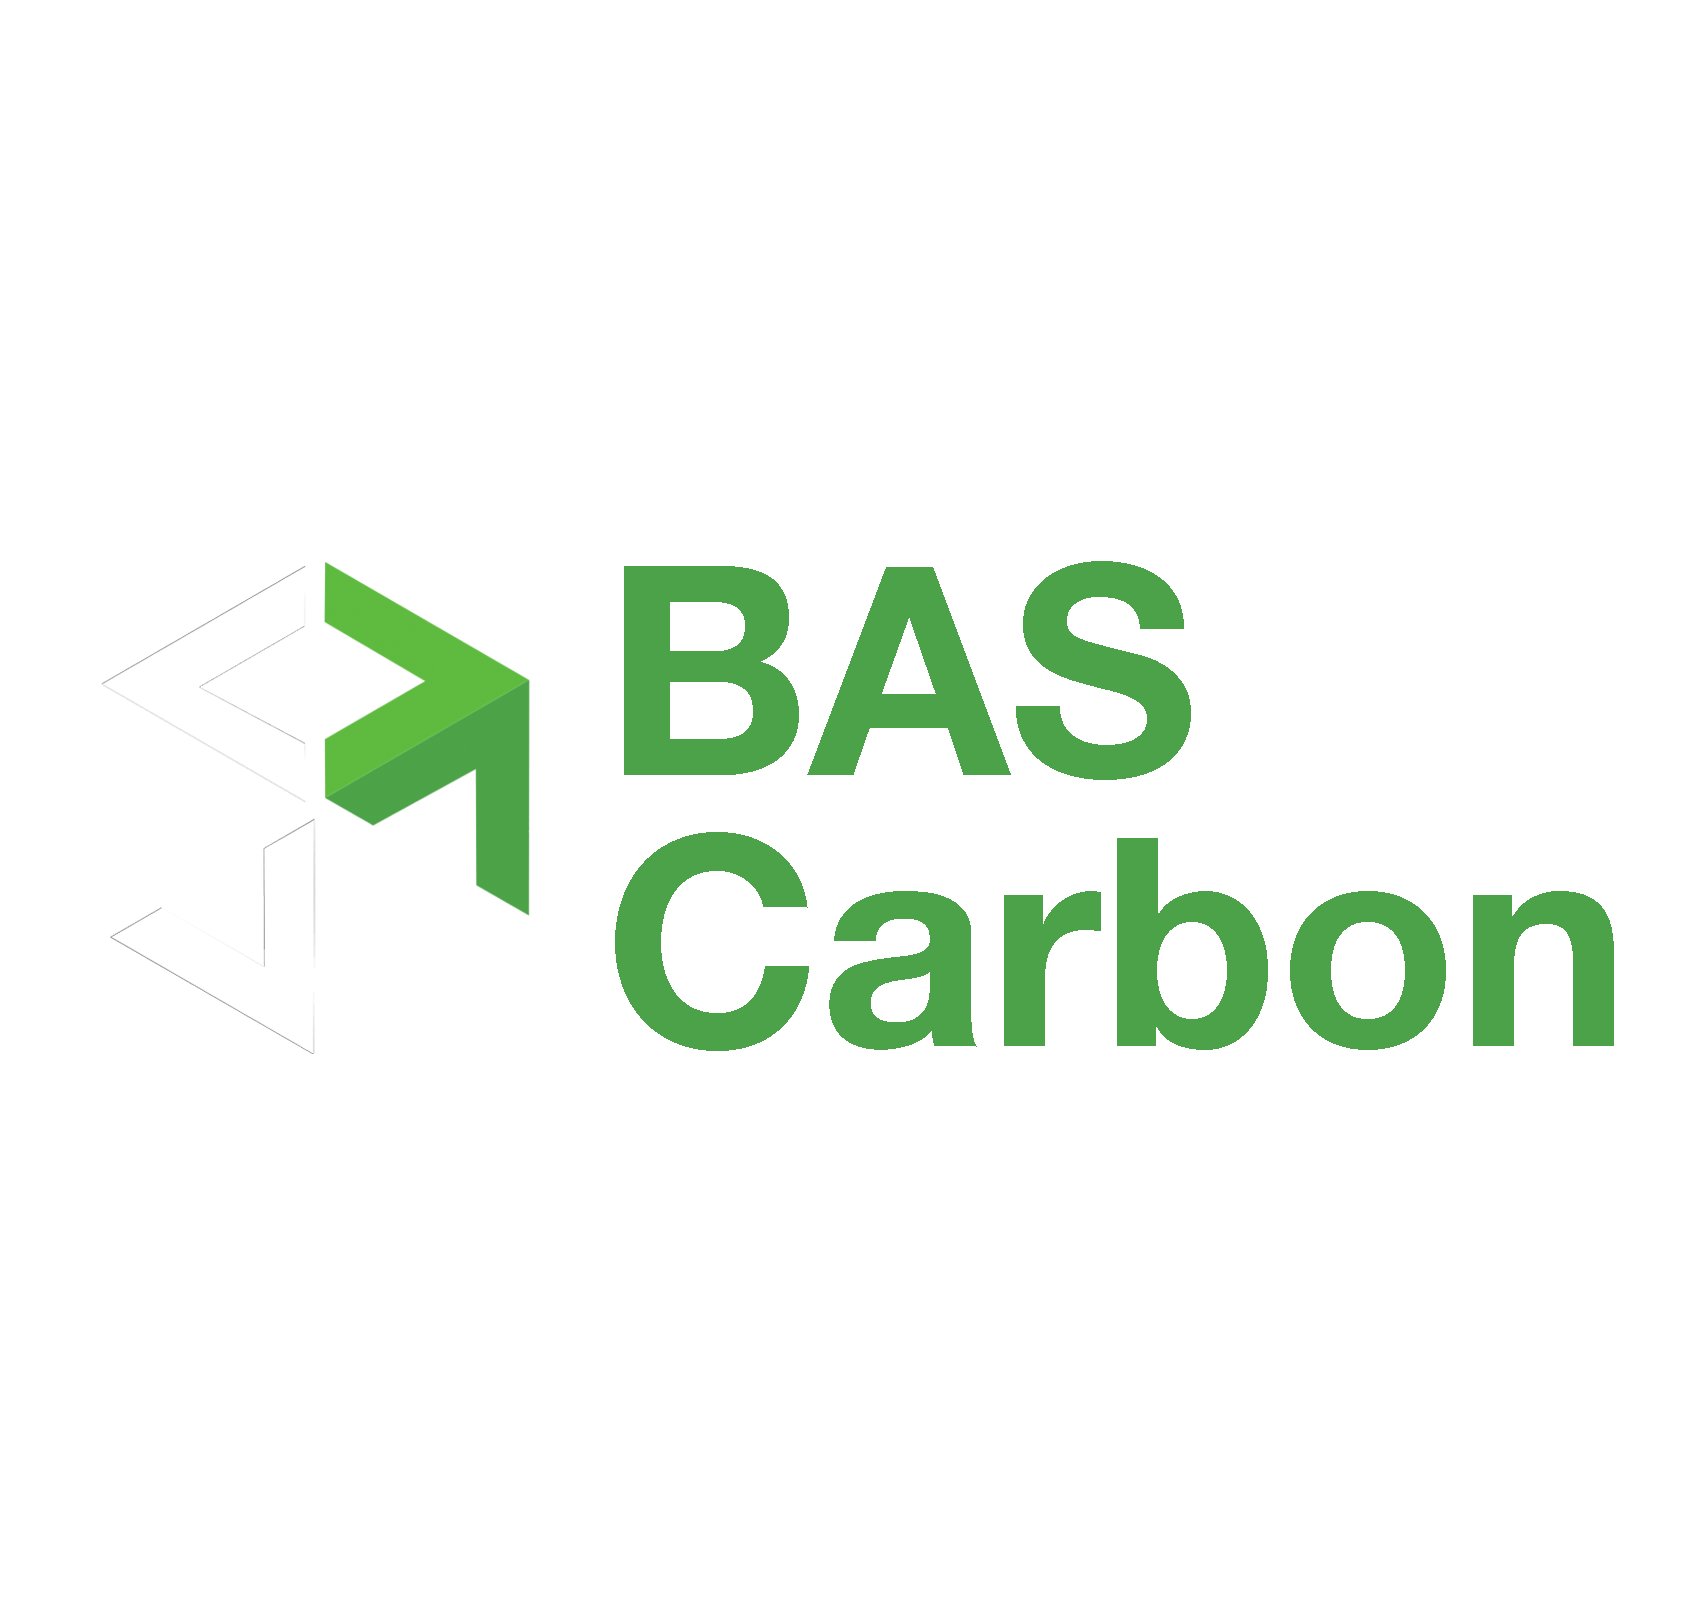 BAS Carbon